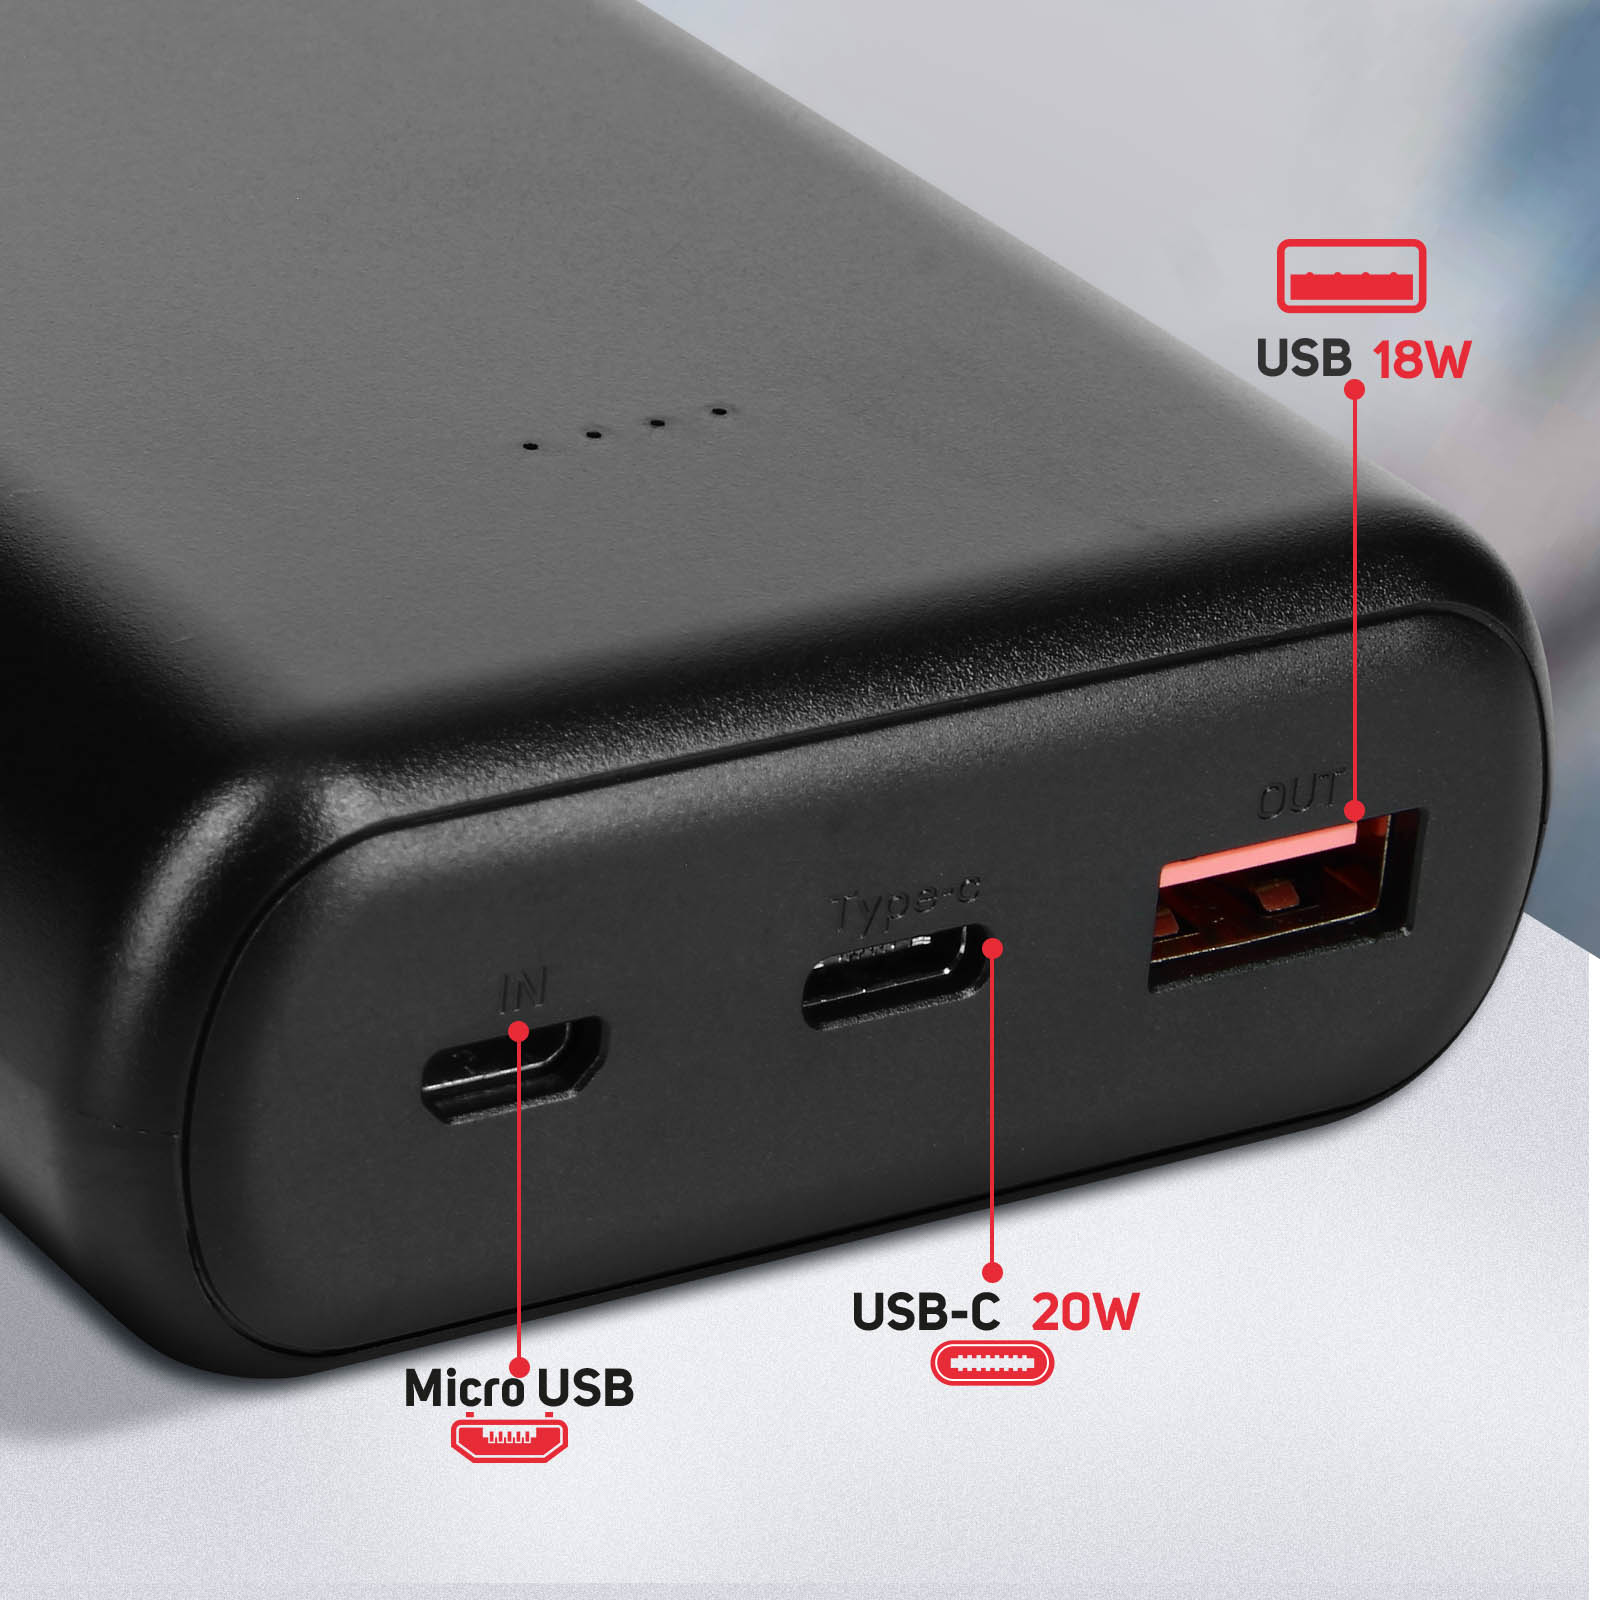 Batterie de Secours 30000 mAh 2x USB Quick Charge 3.0 + USB-C Power  Delivery avec Câble USB-C 1m, Swissten - Noir - Français